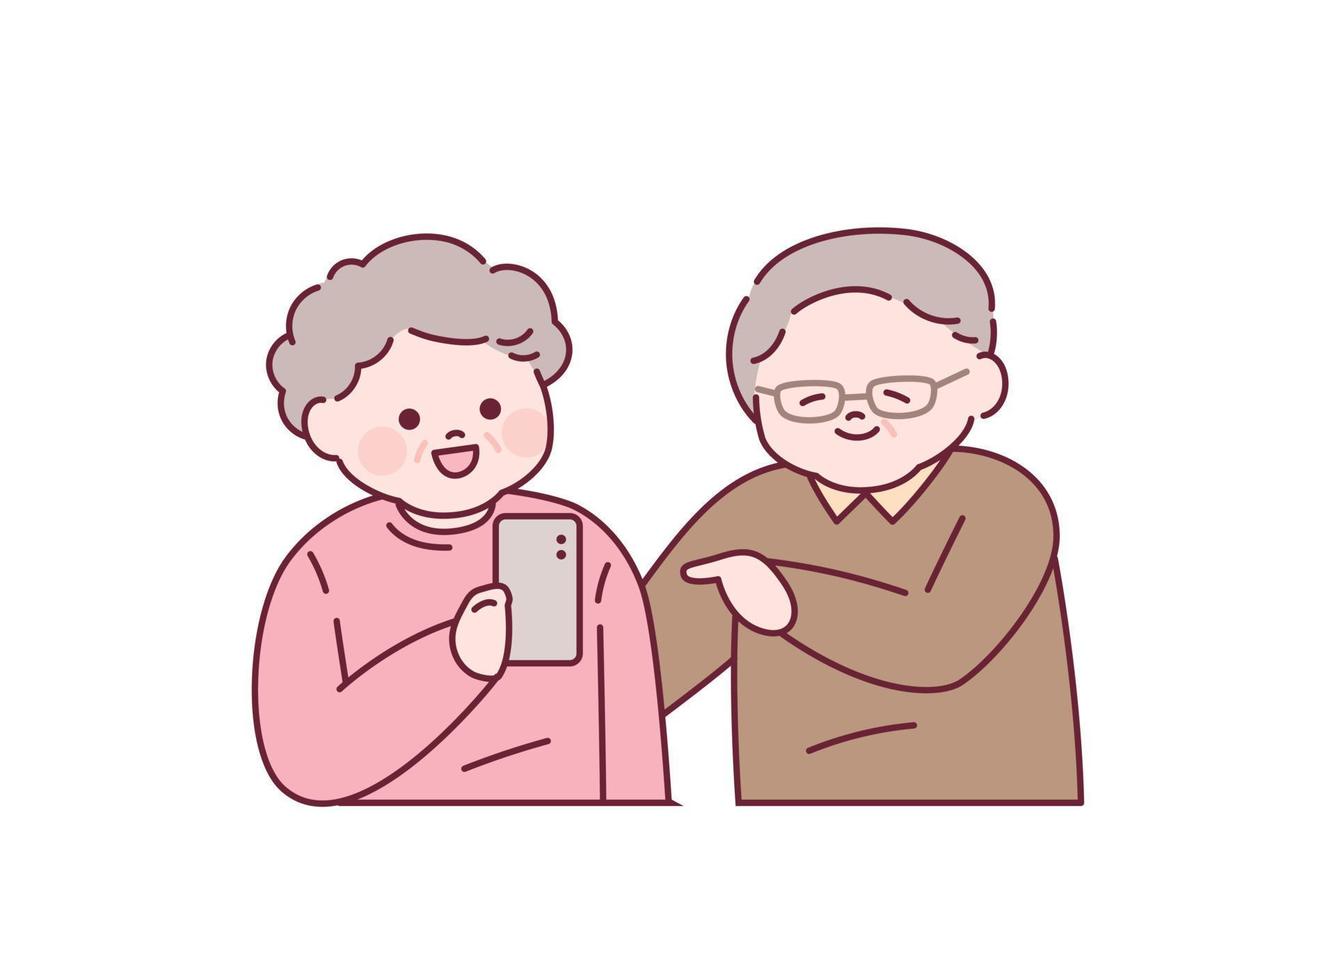 ett äldre par är har en konversation medan använder sig av en smartphone. översikt enkel vektor illustration.